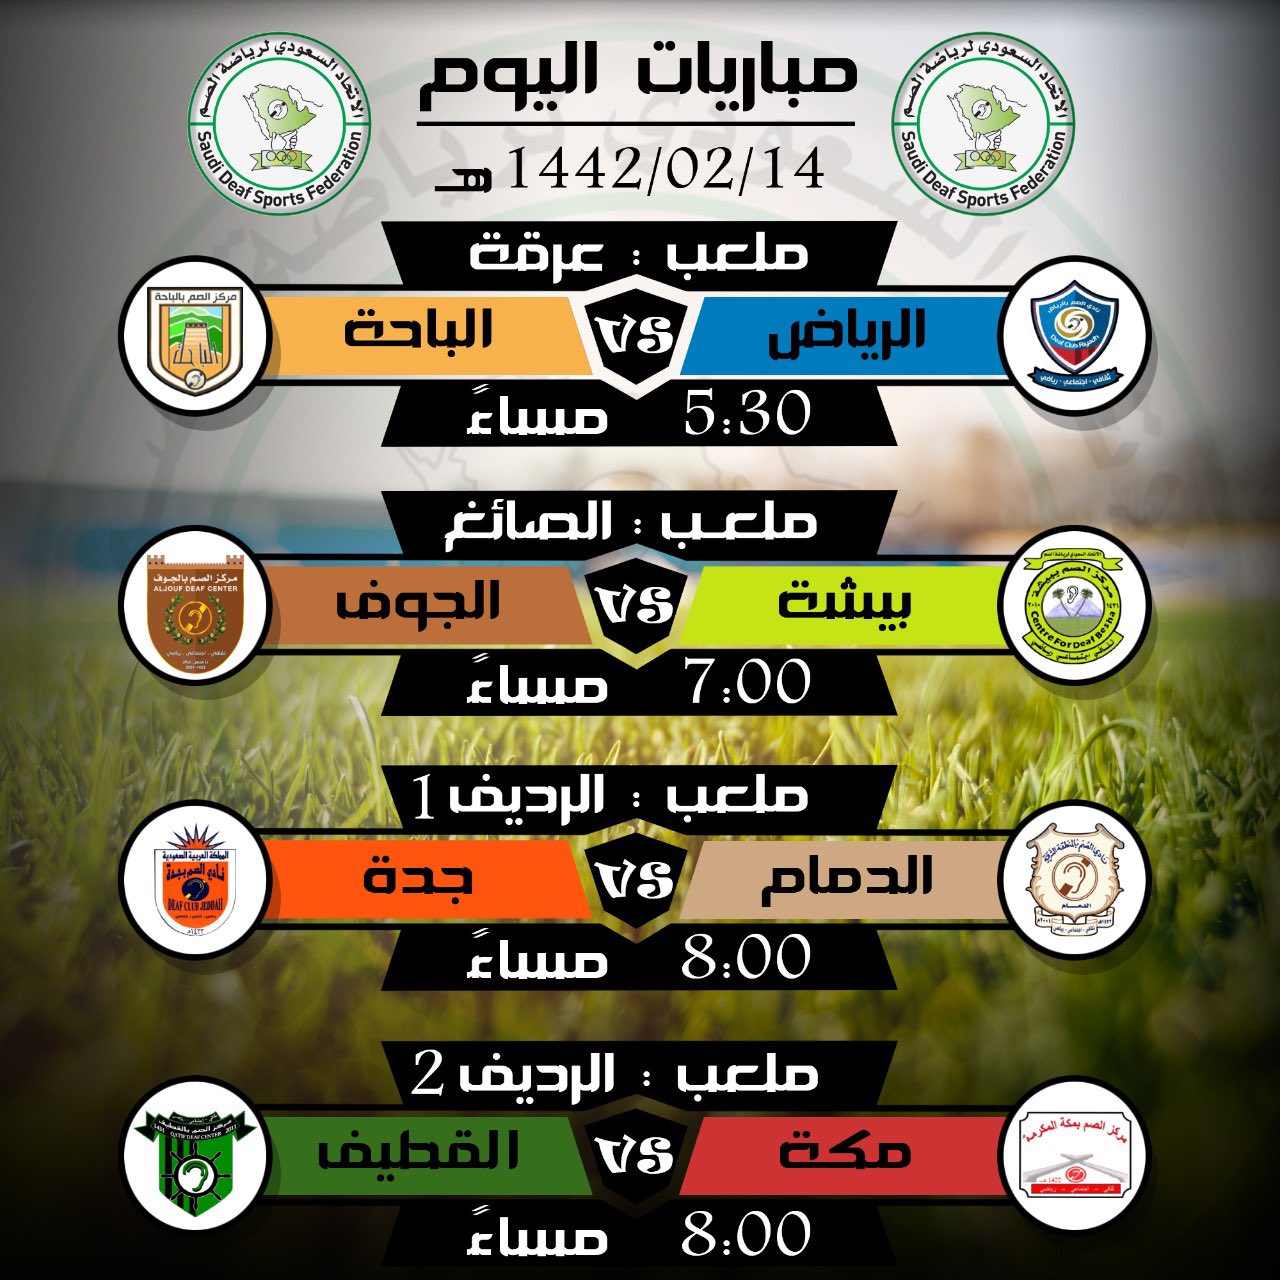 تنطلق اليوم مباريات كرة القدم للمجموعات بعد ان تم تقسيم الفرق المشاركة الى مجموعتين بواقع اربع فرق في المجموعة الاولى والتي تقام بمدينة الرياض بينما تقام مباريات المجموعة الثانية في مدينة الدمام حيث تضم خمس فرق ويتاهل صاحبي المركز الاول والثاني من كل مجمو P_1738tf0711